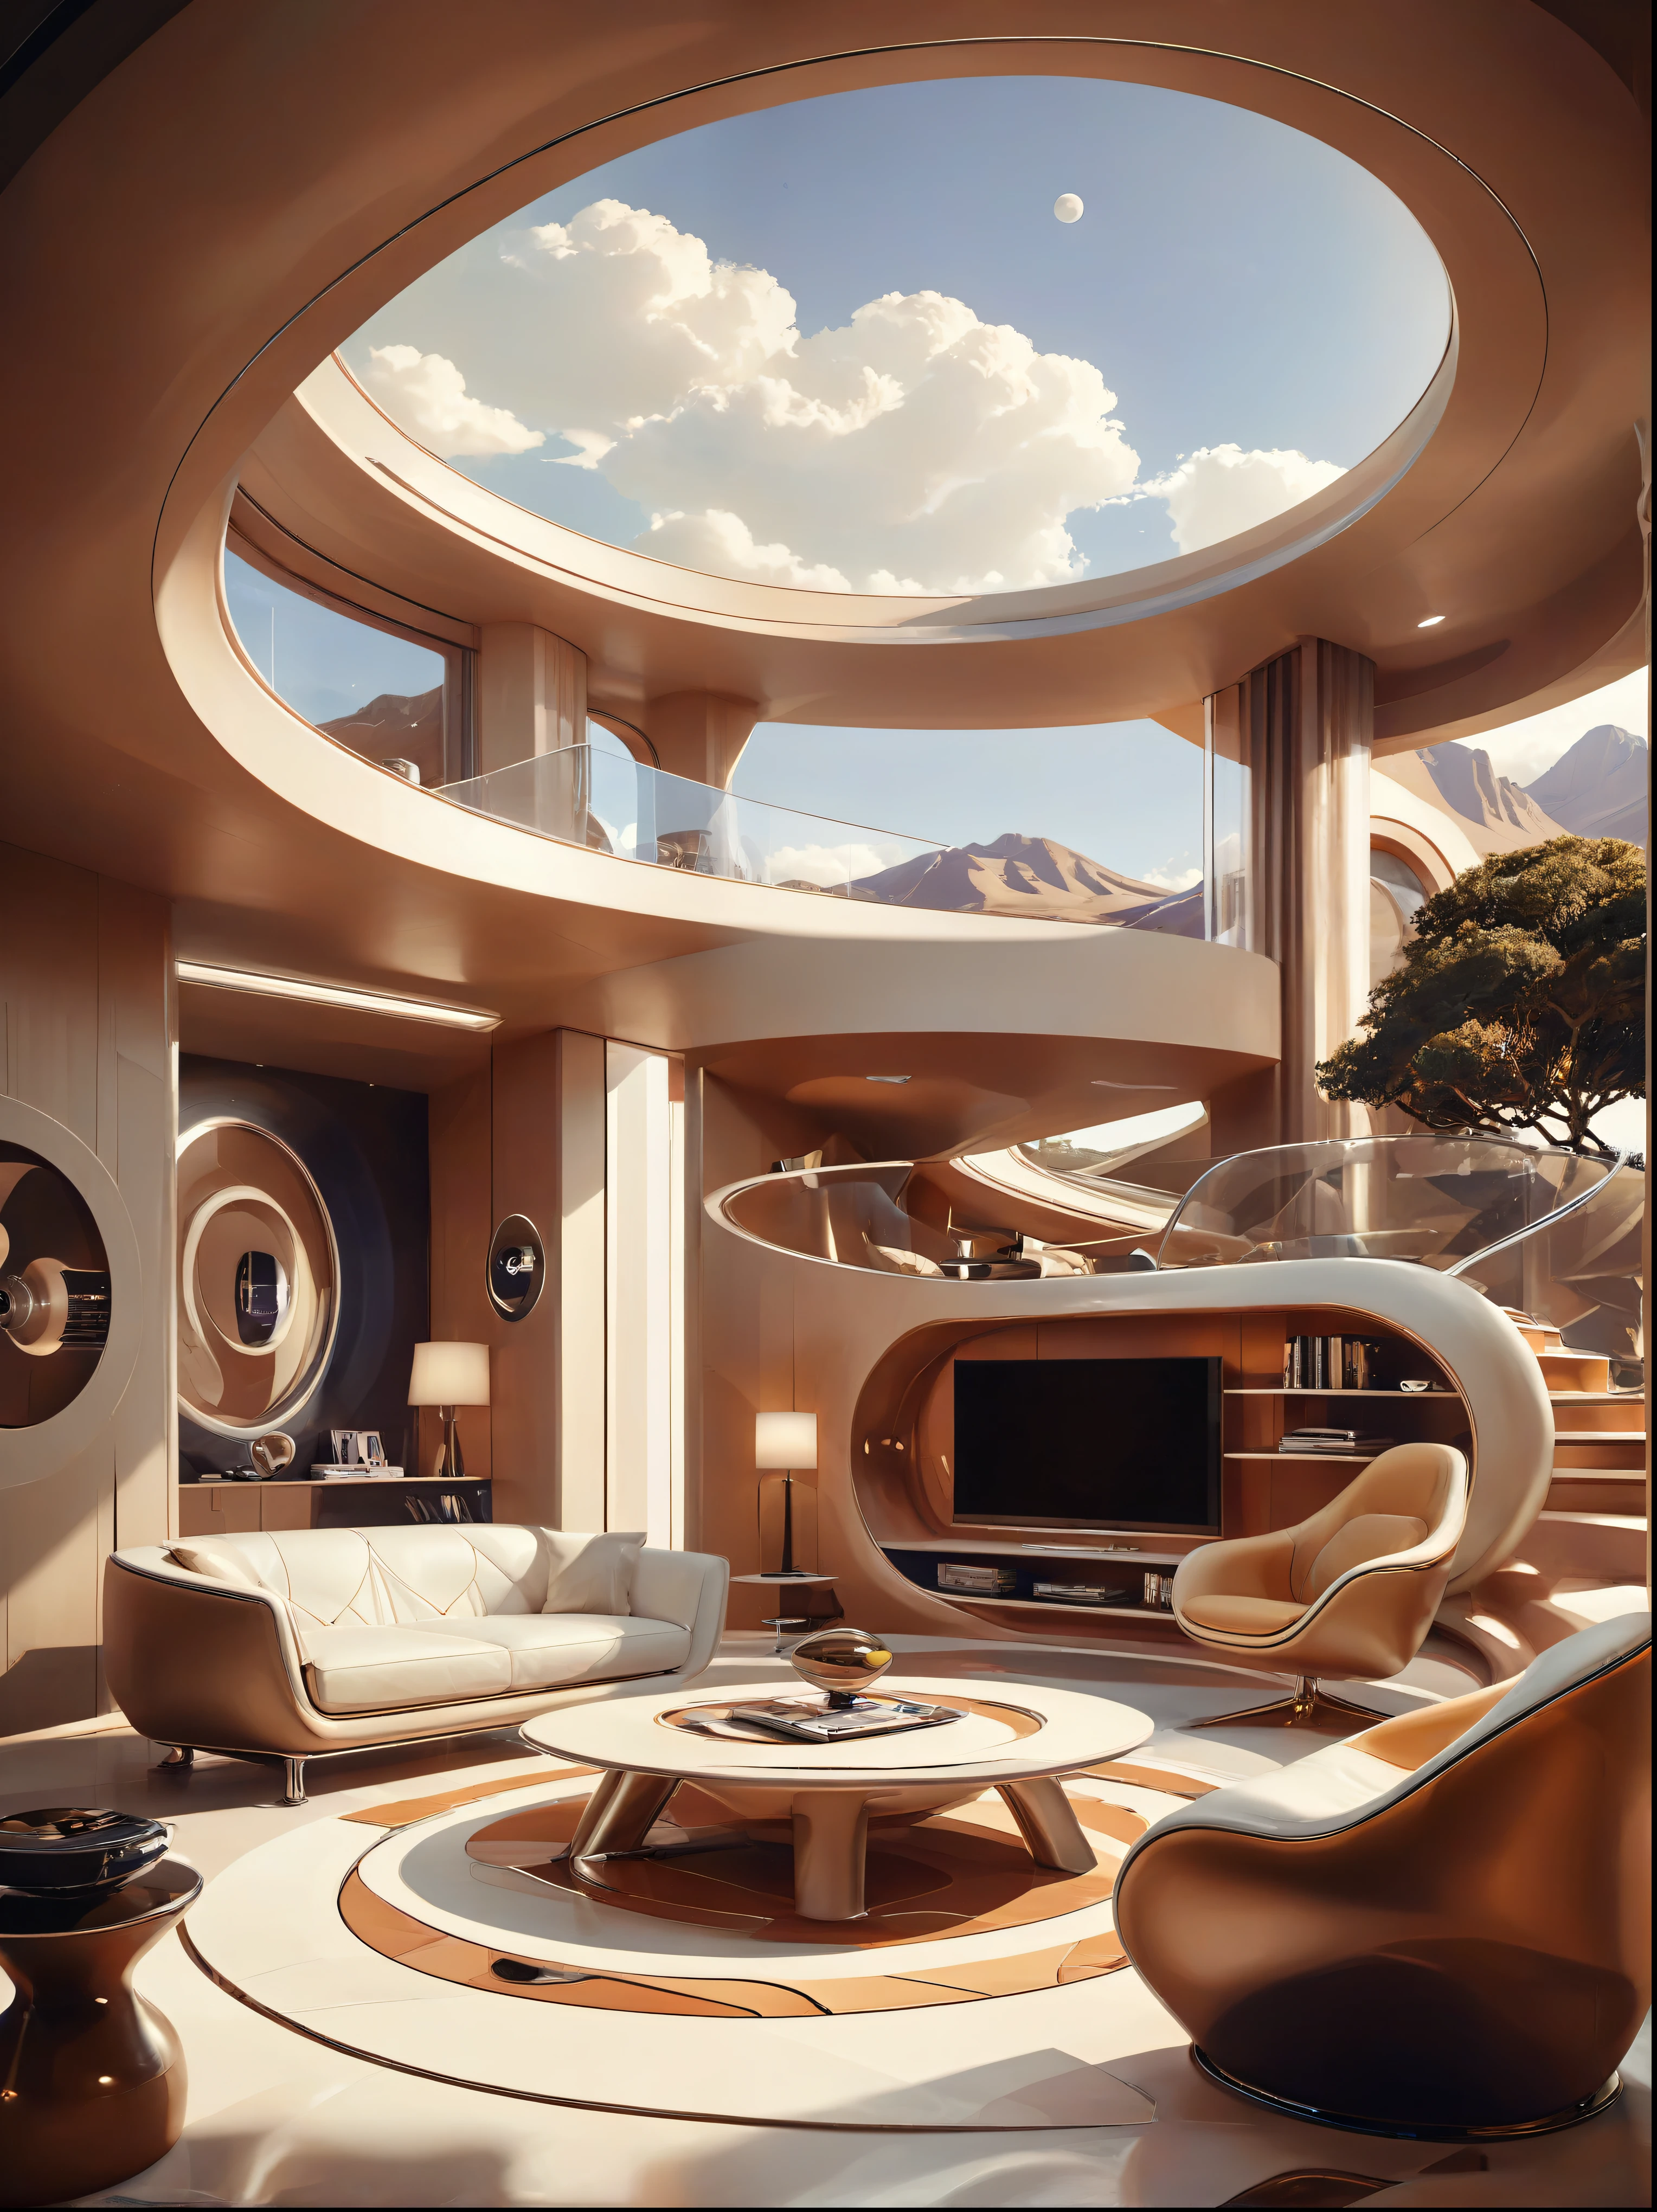 미래형 주택을 위한 거실 연구 개념에는 유기적 유동성이 포함되어 있습니다.、원과 기하학적 모양，예술적 상상력을 사용하여 집과 풍경을 렌더링합니다., 